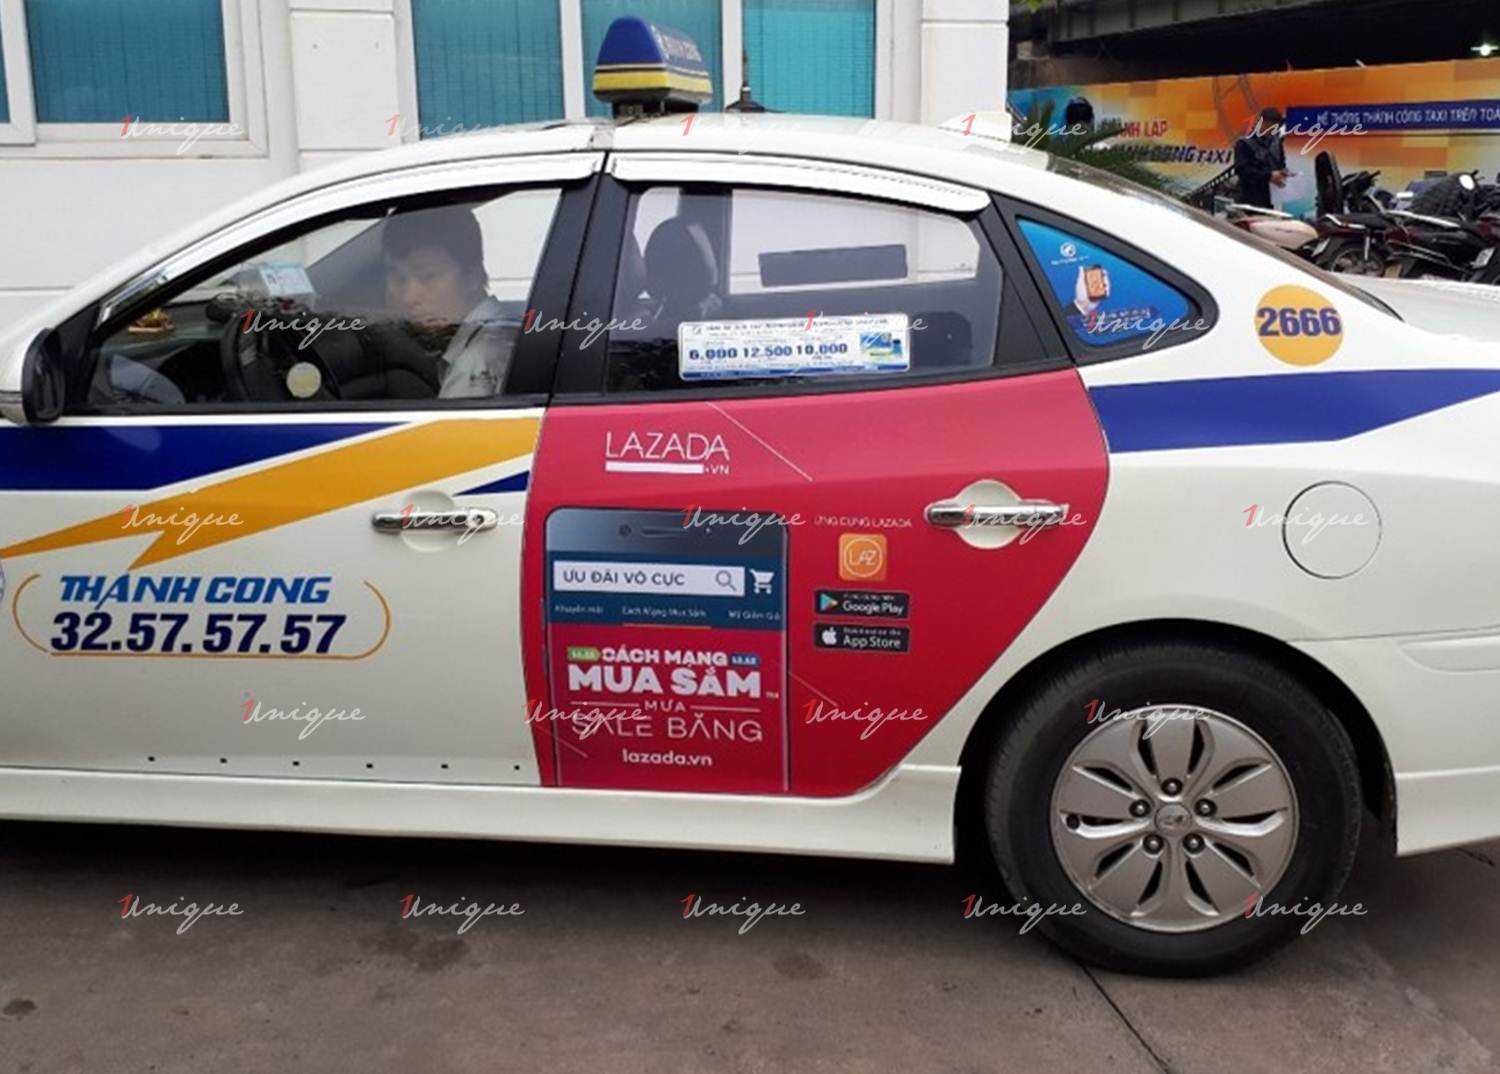 Chiến dịch quảng cáo taxi của Lazada tại Hà Nội